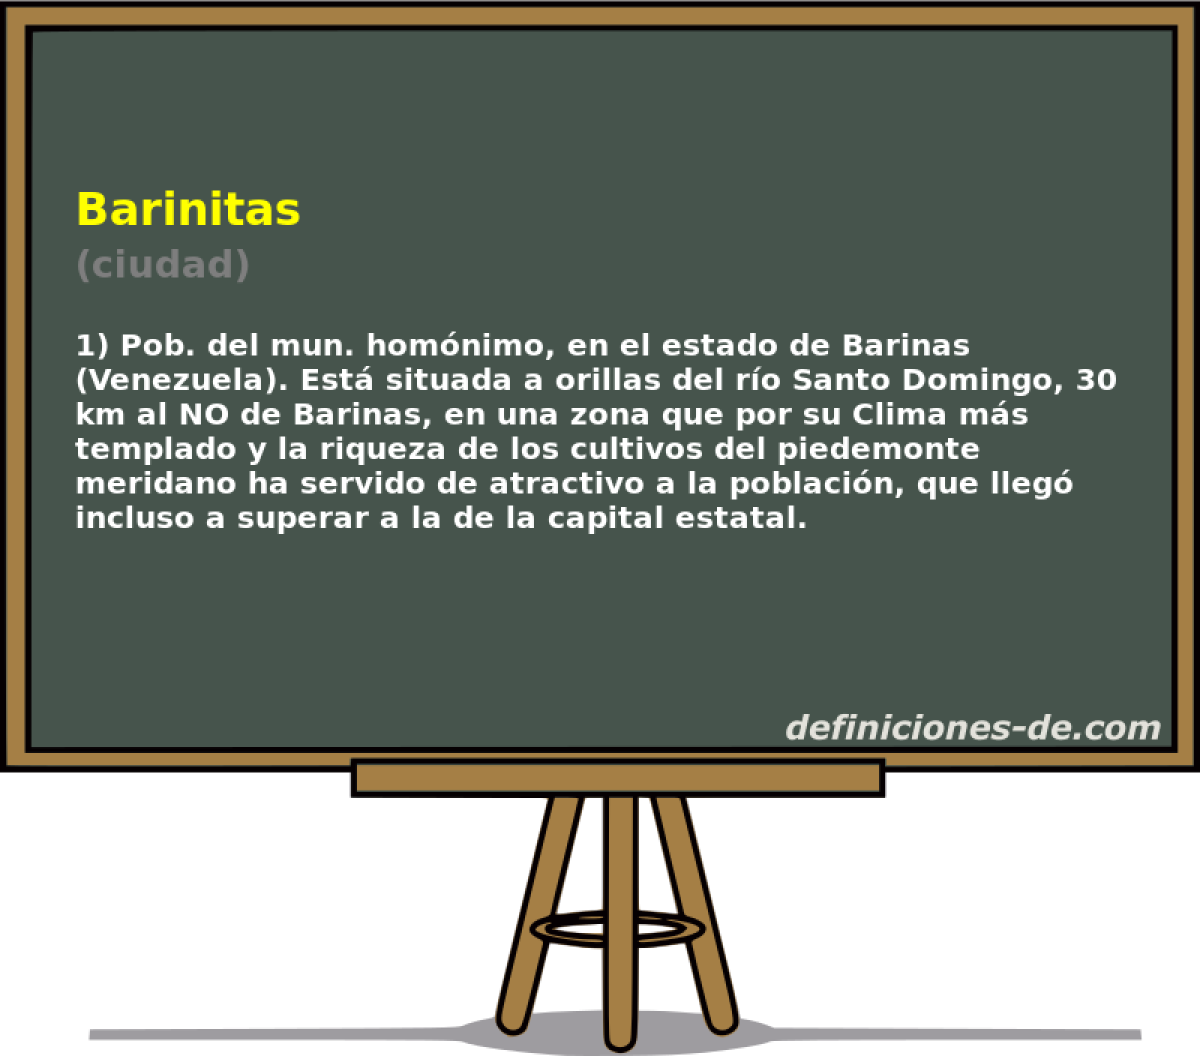 Barinitas (ciudad)